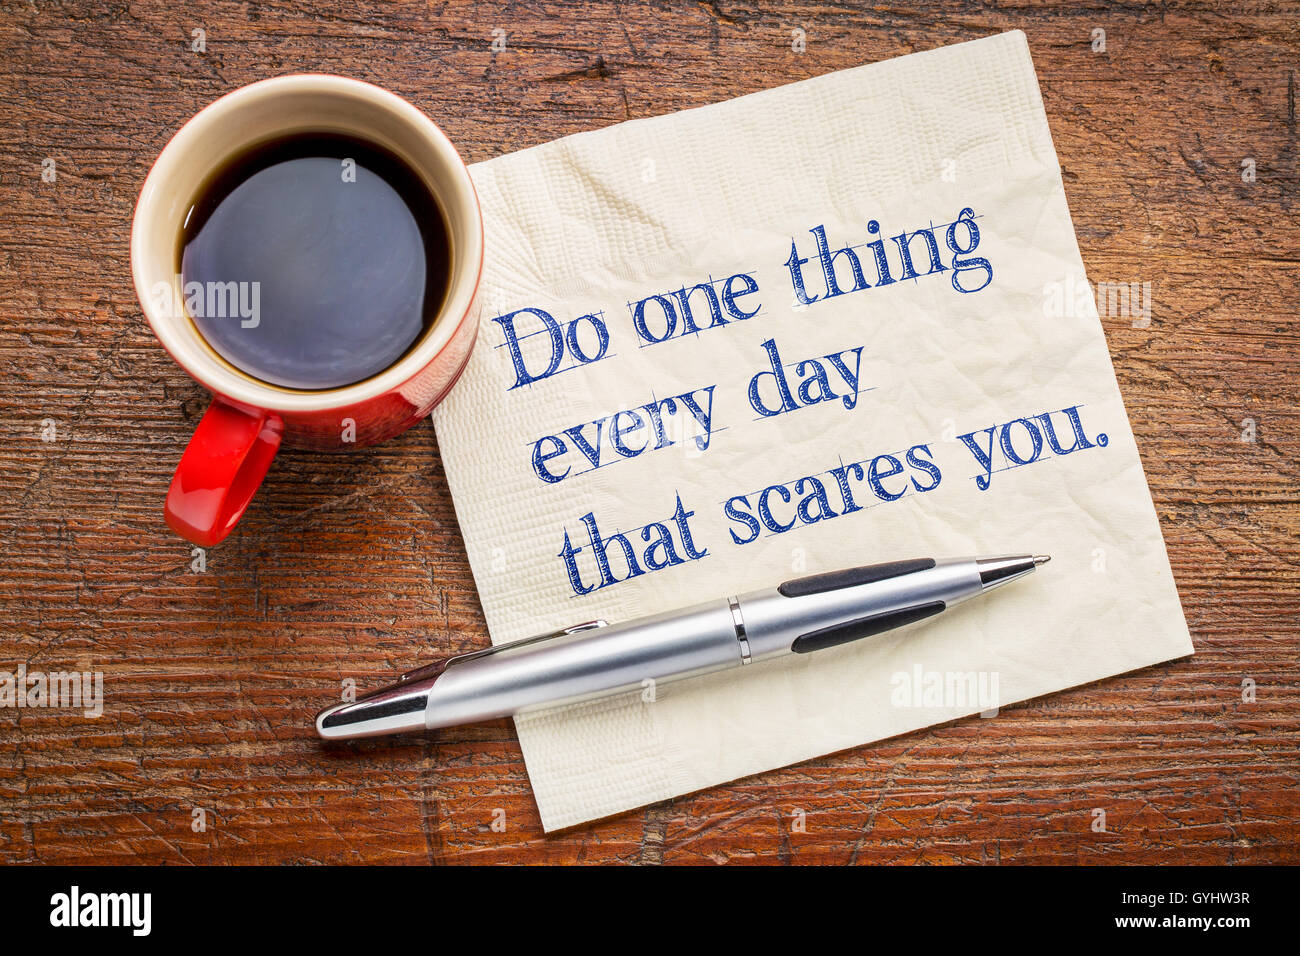 Eins tun jeden Tag, das schreckt Sie - motivierende Handschrift auf einer Serviette mit einer Tasse Kaffee Stockfoto